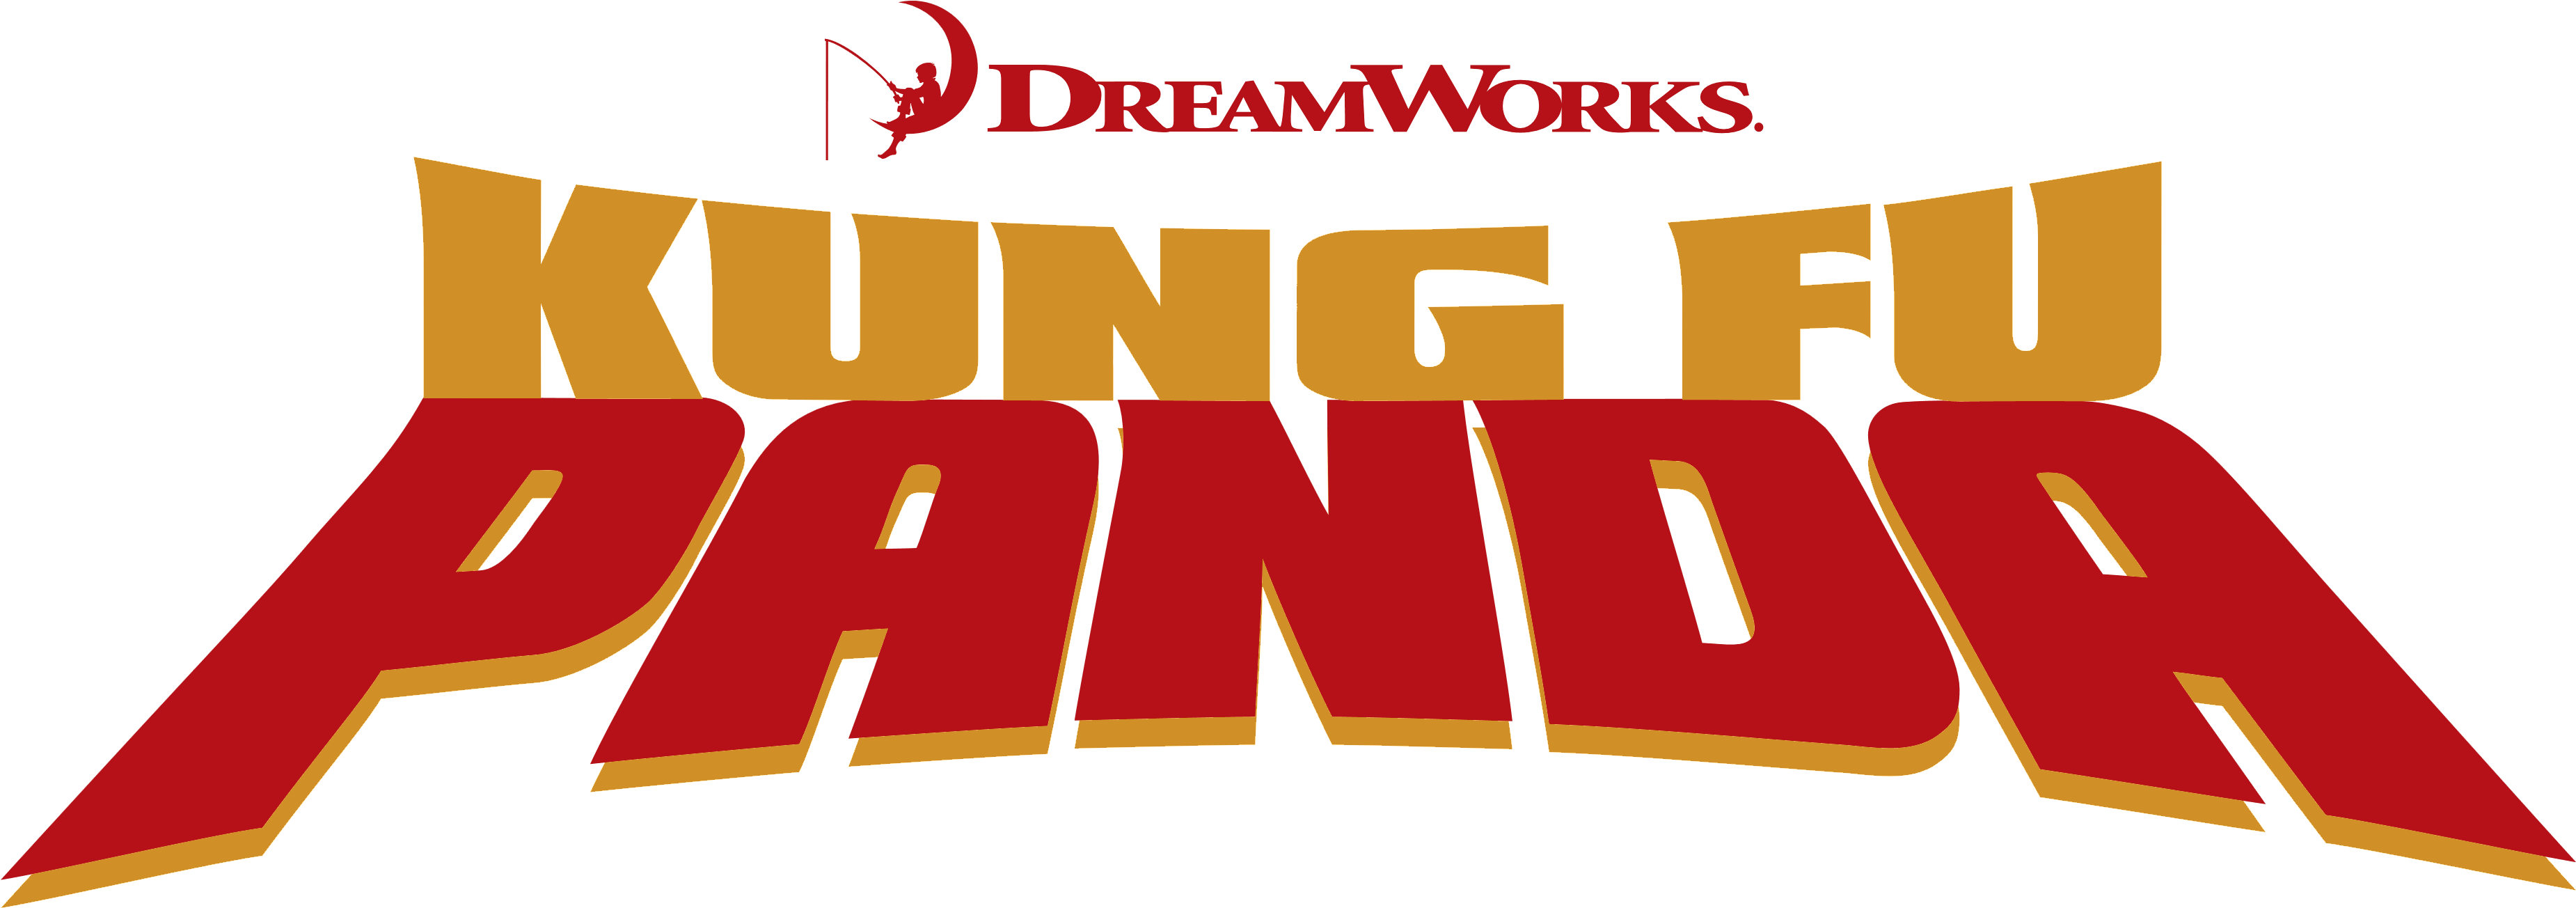 Kung Fu Panda Logo - Kung Fu Panda .png (3750x1380), Png Download